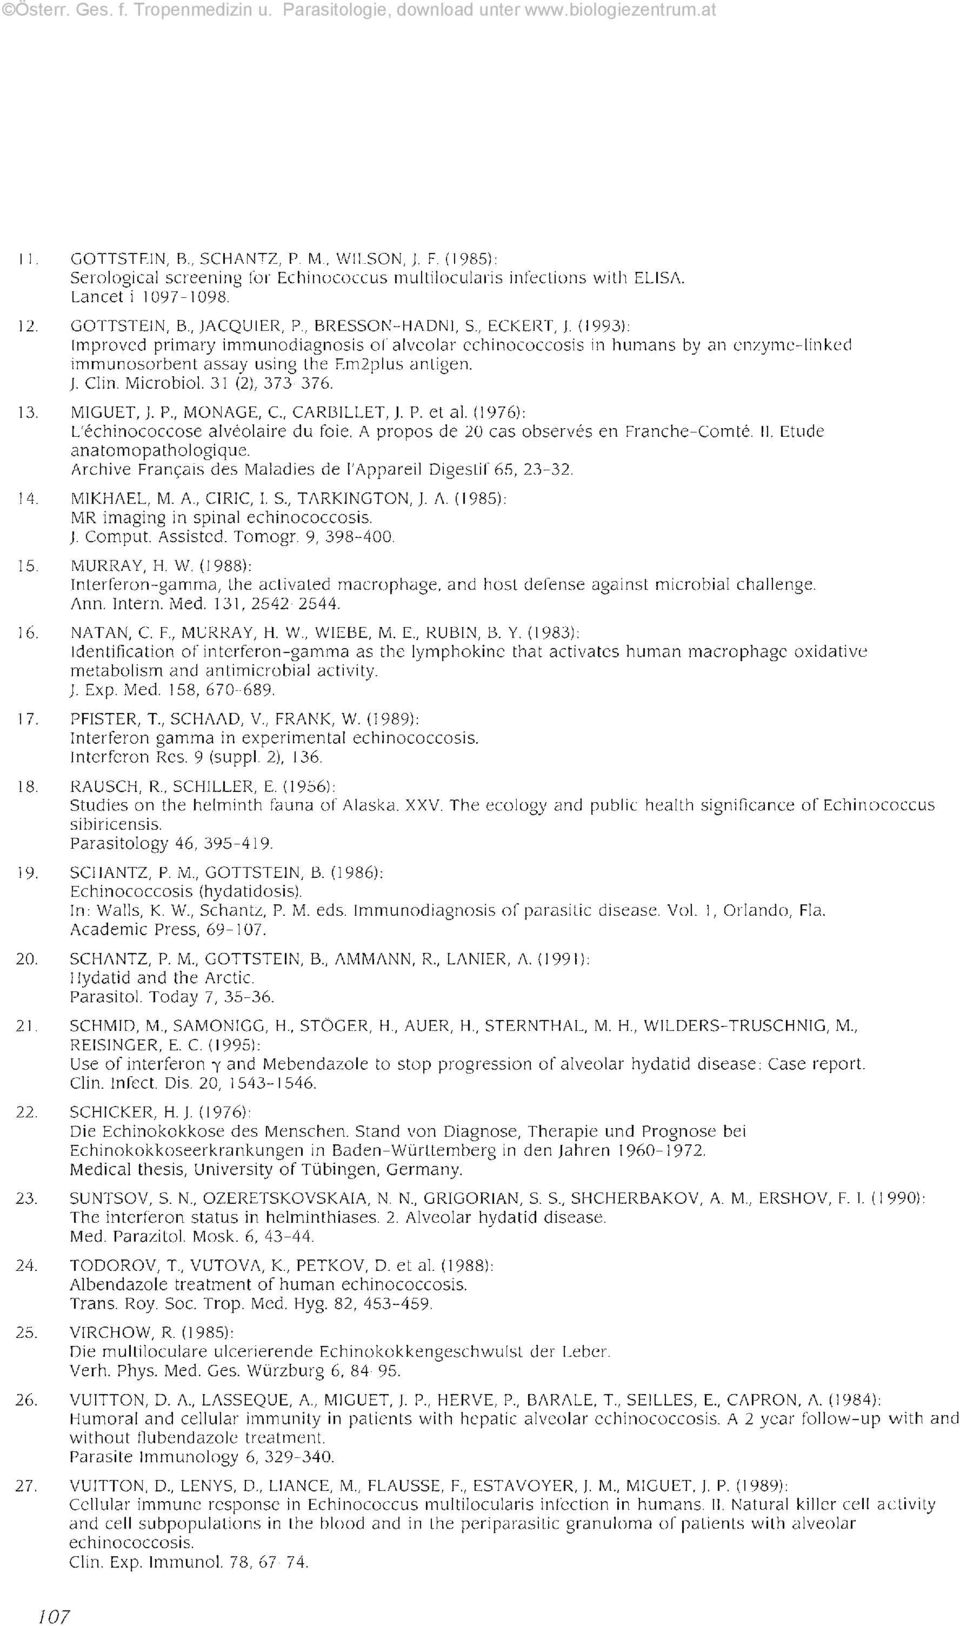 31 (2), 373-376. 13. MIGUET, J. P., MONAGE, C, CARBILLET, J. P. et al. (1976): L'echinococcose alveolaire du foie. A propos de 20 cas observes en Franche-Comte. 11. Etude anatomopathologique.